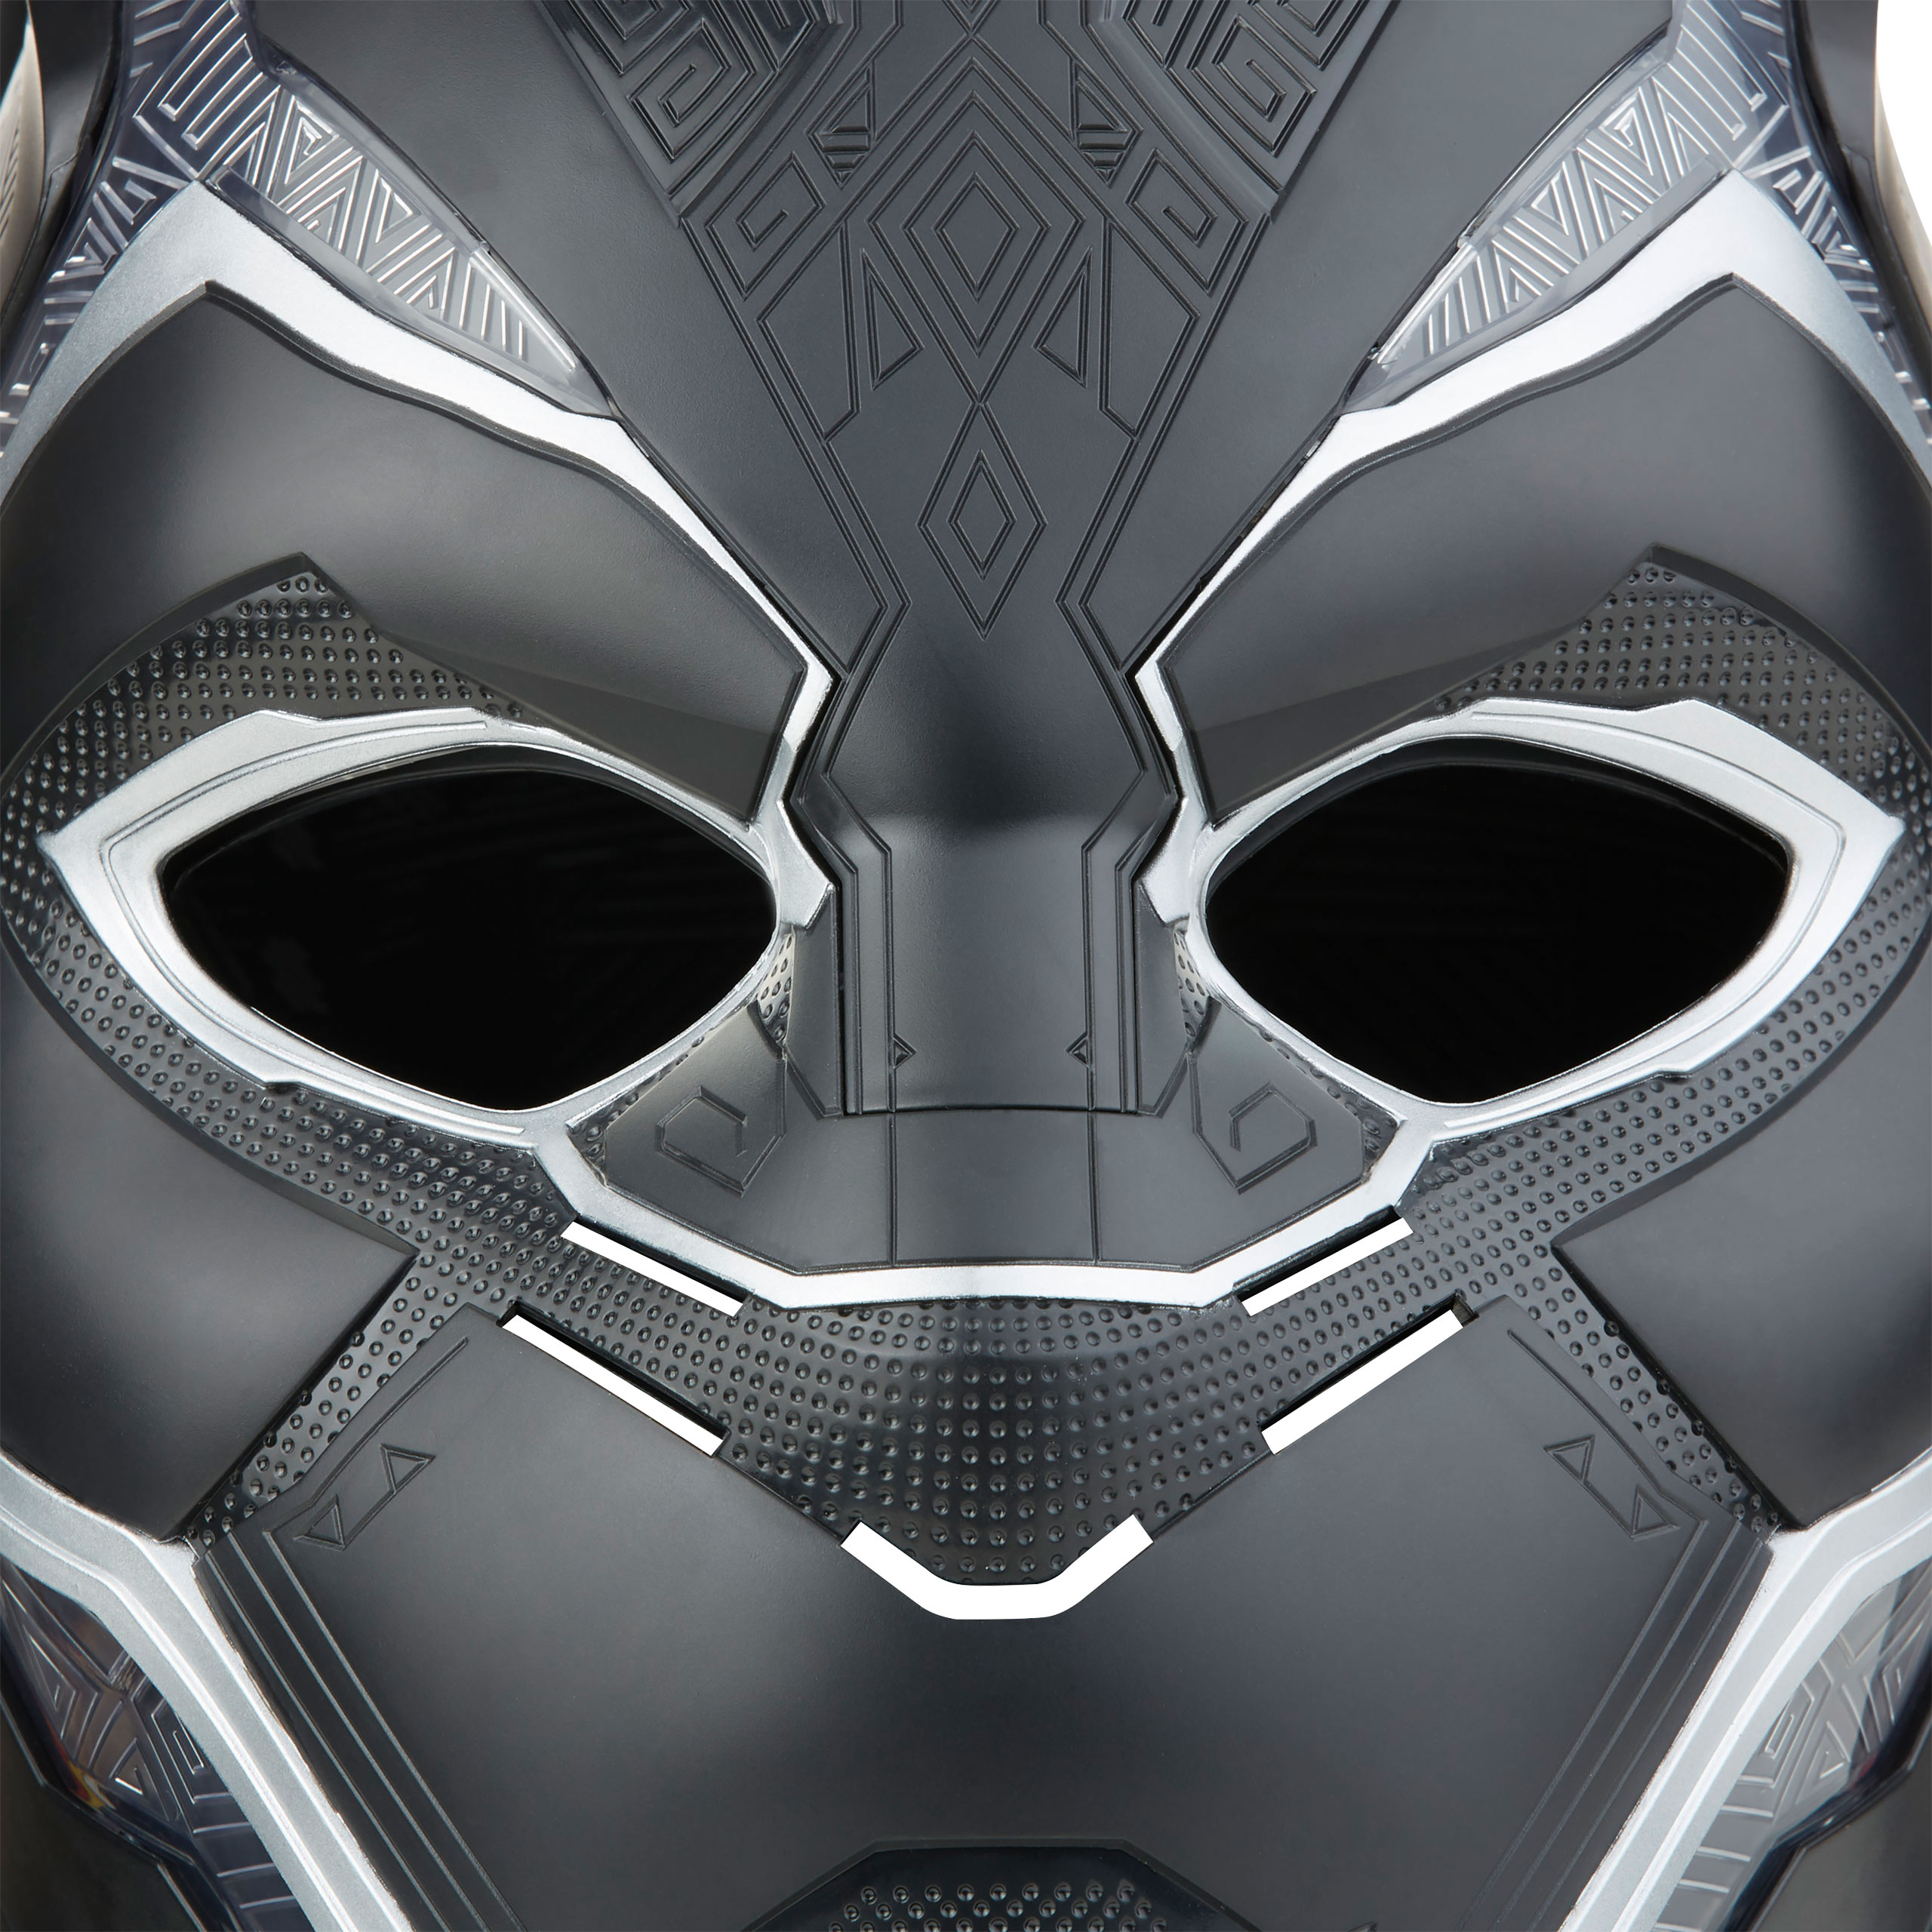 Marvel - Black Panther Helm Replica met Lichteffecten